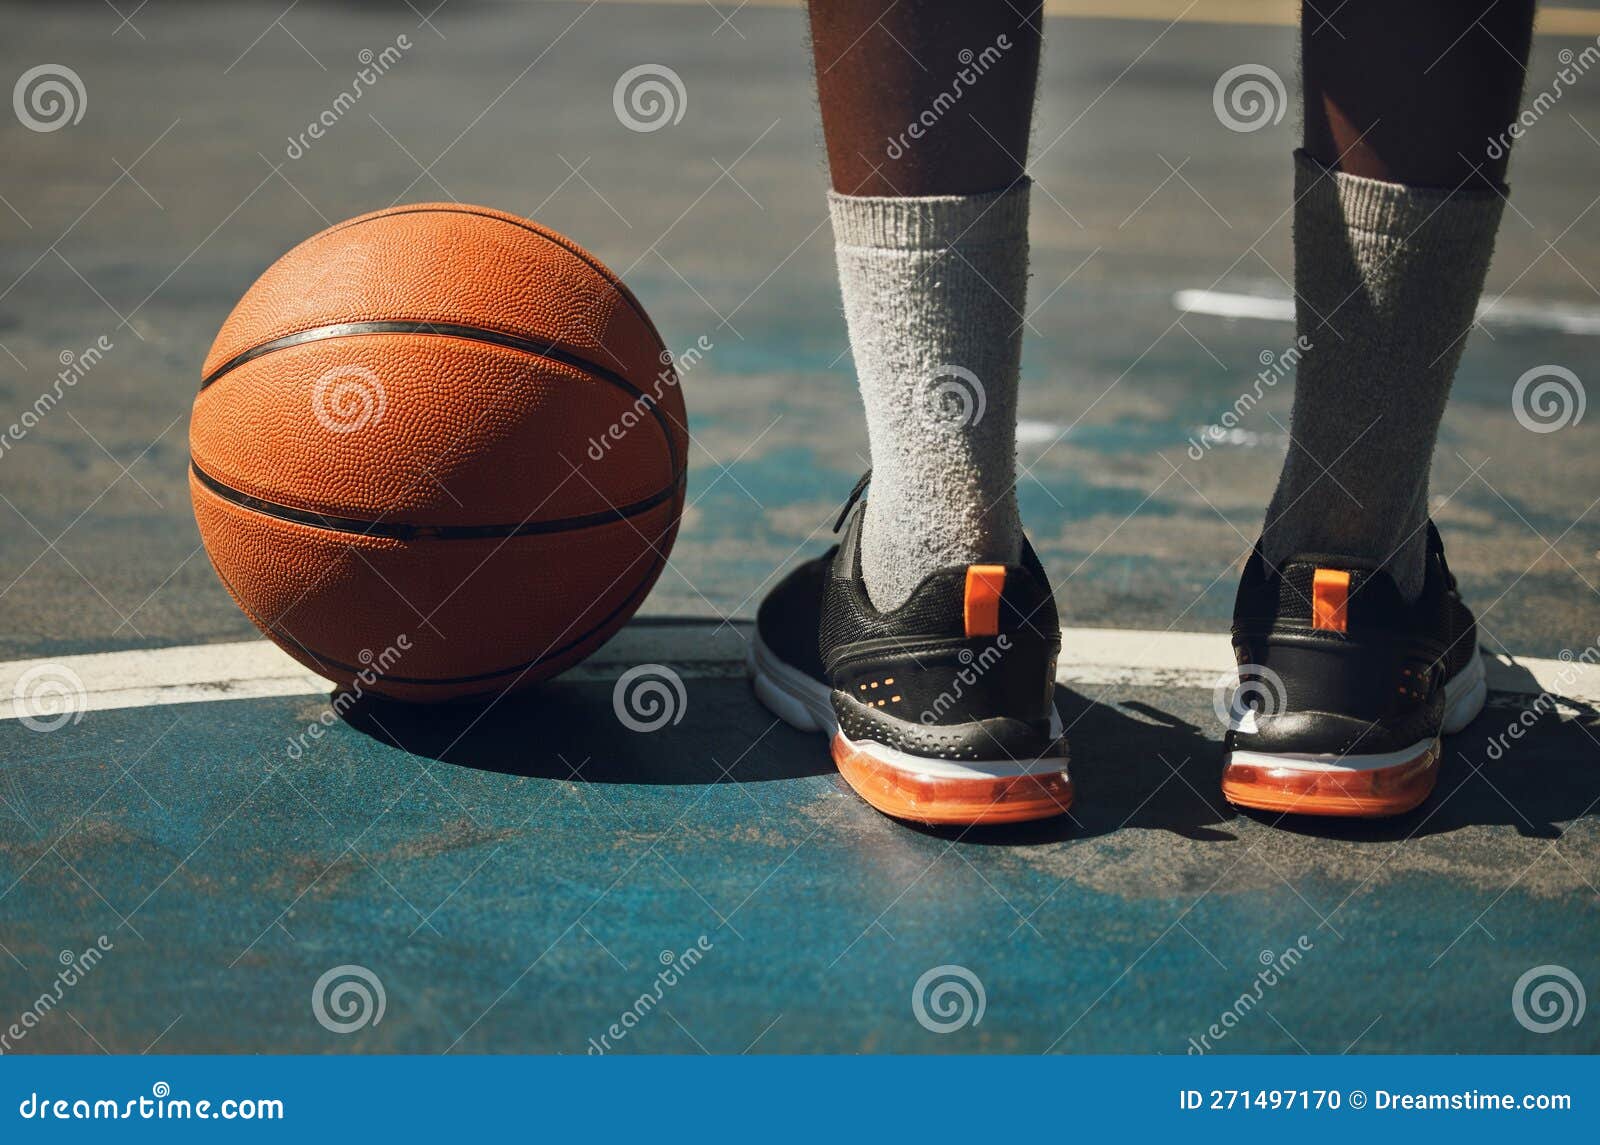 Bola de basquete no campo de esportes. estilo de vida saudável e